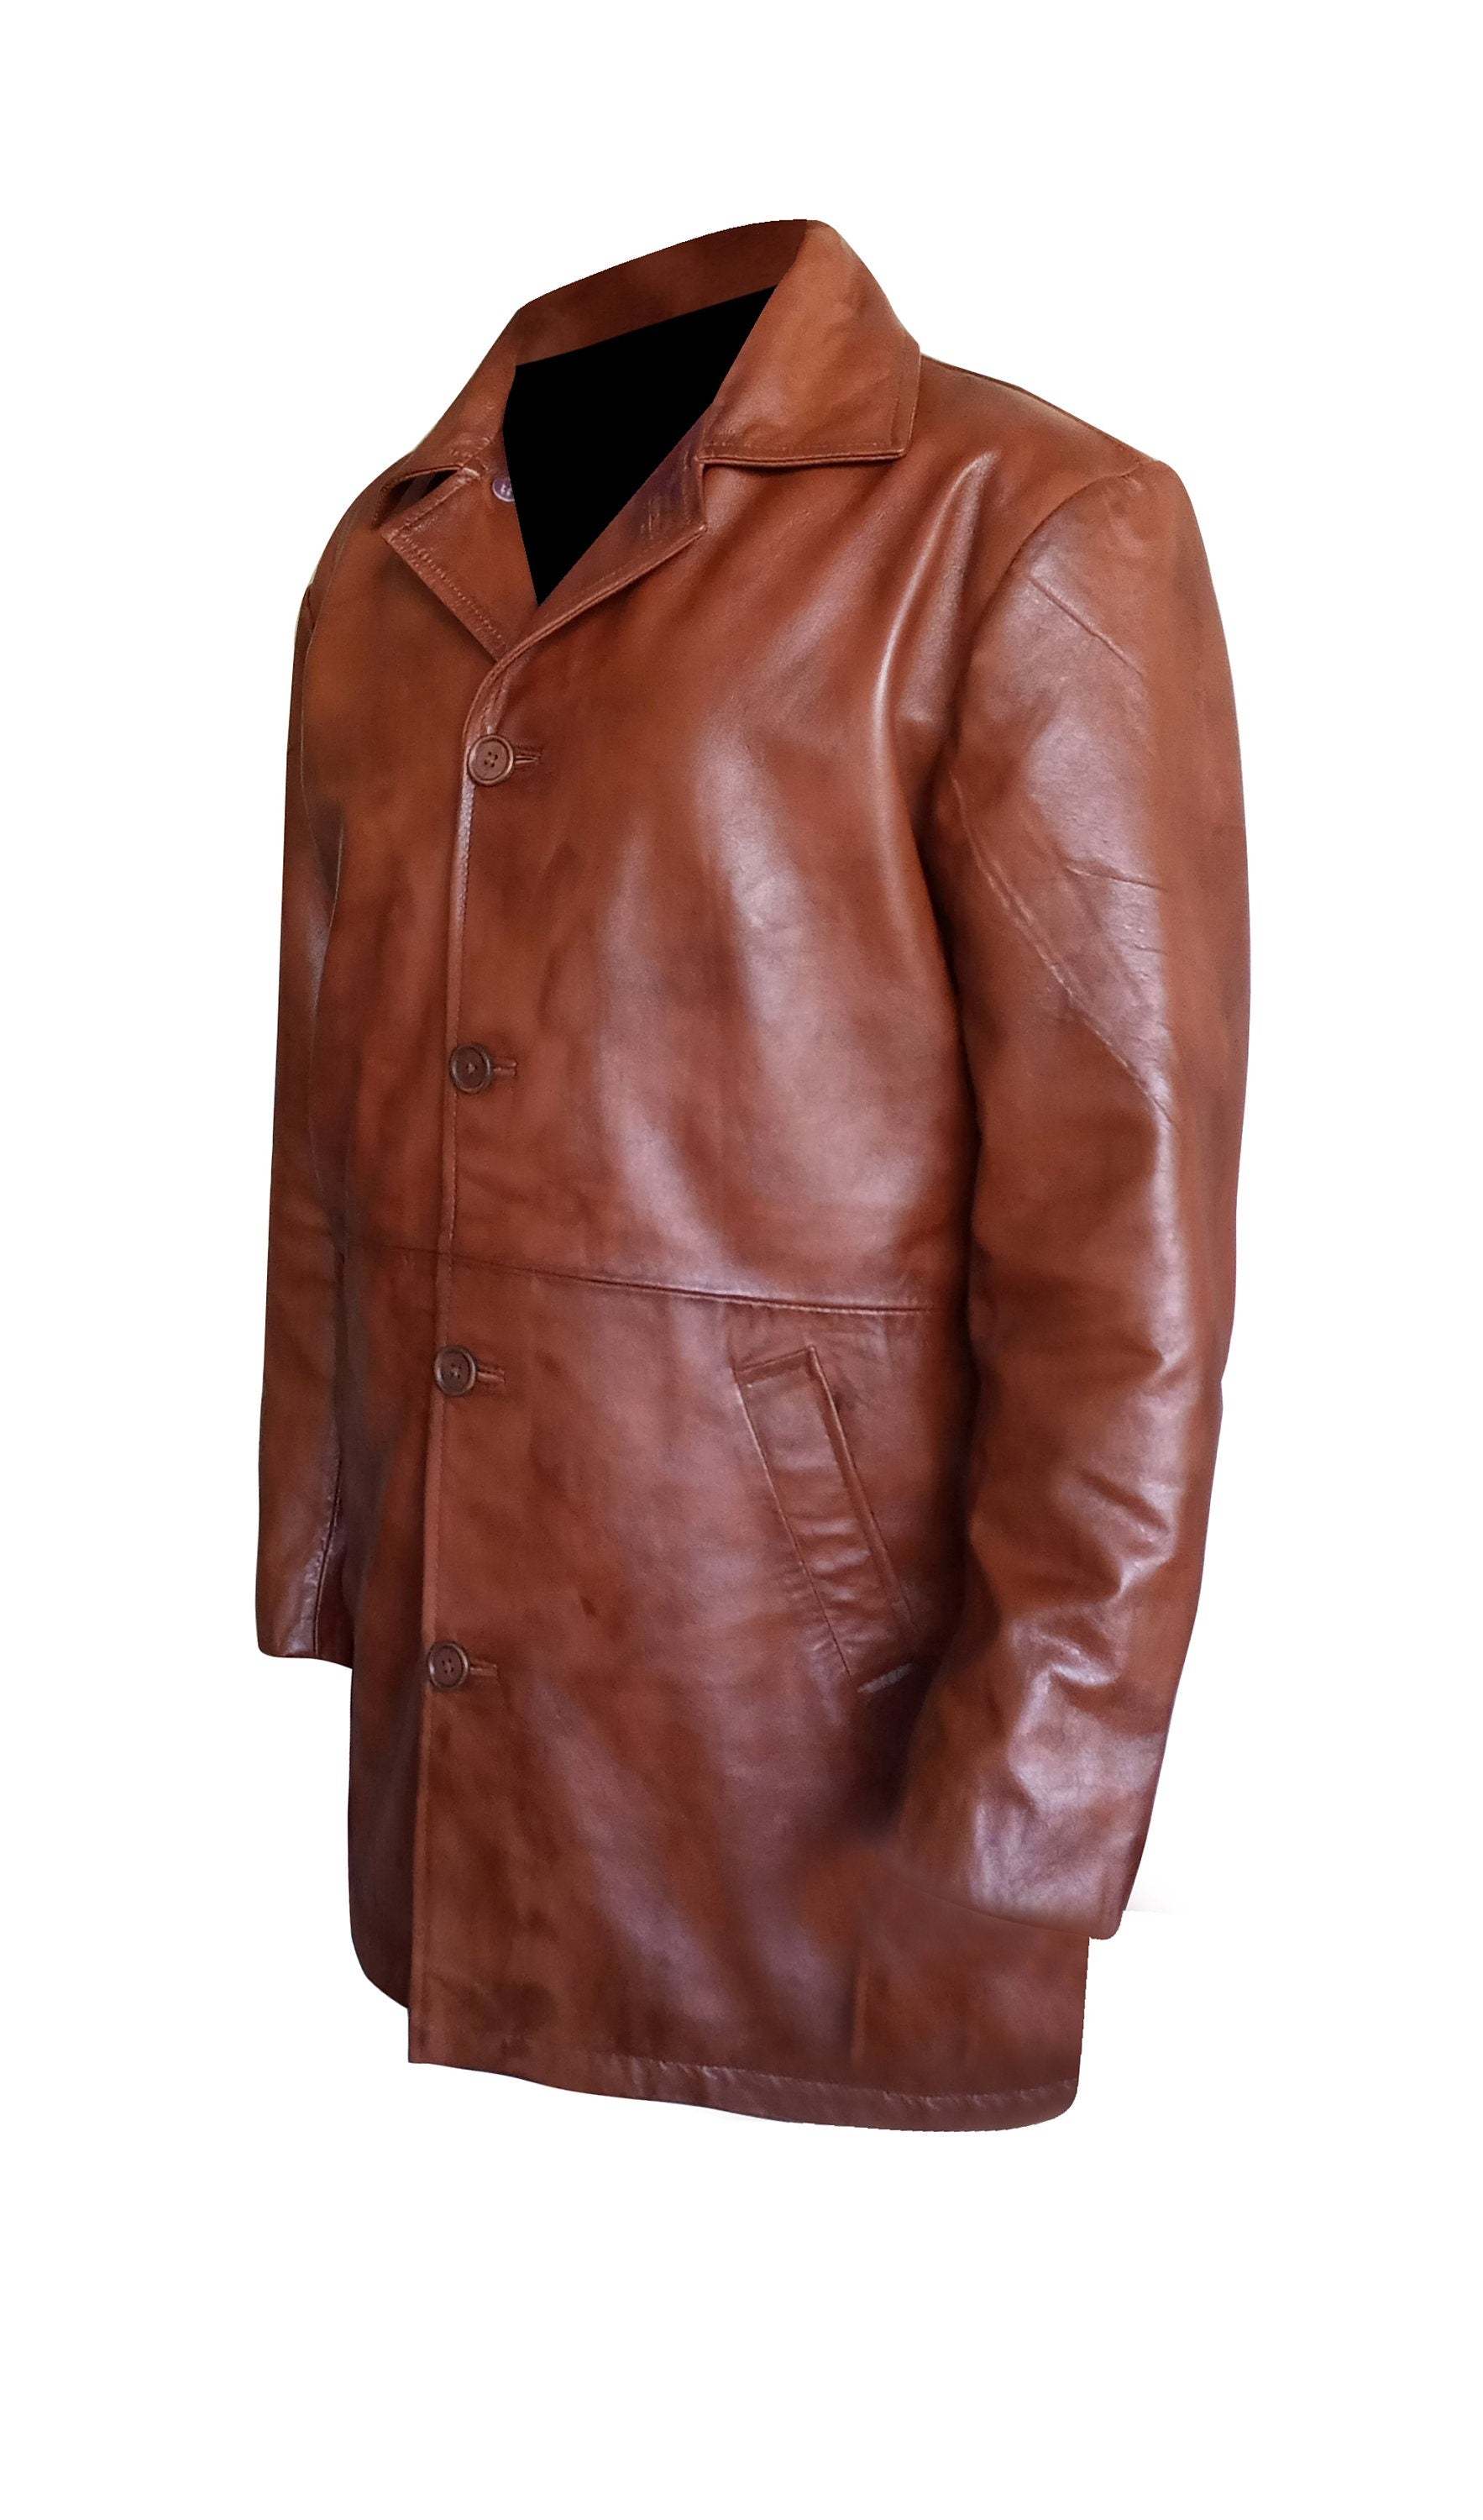 Handmade Leather Trench Coat Men's Winter Coat